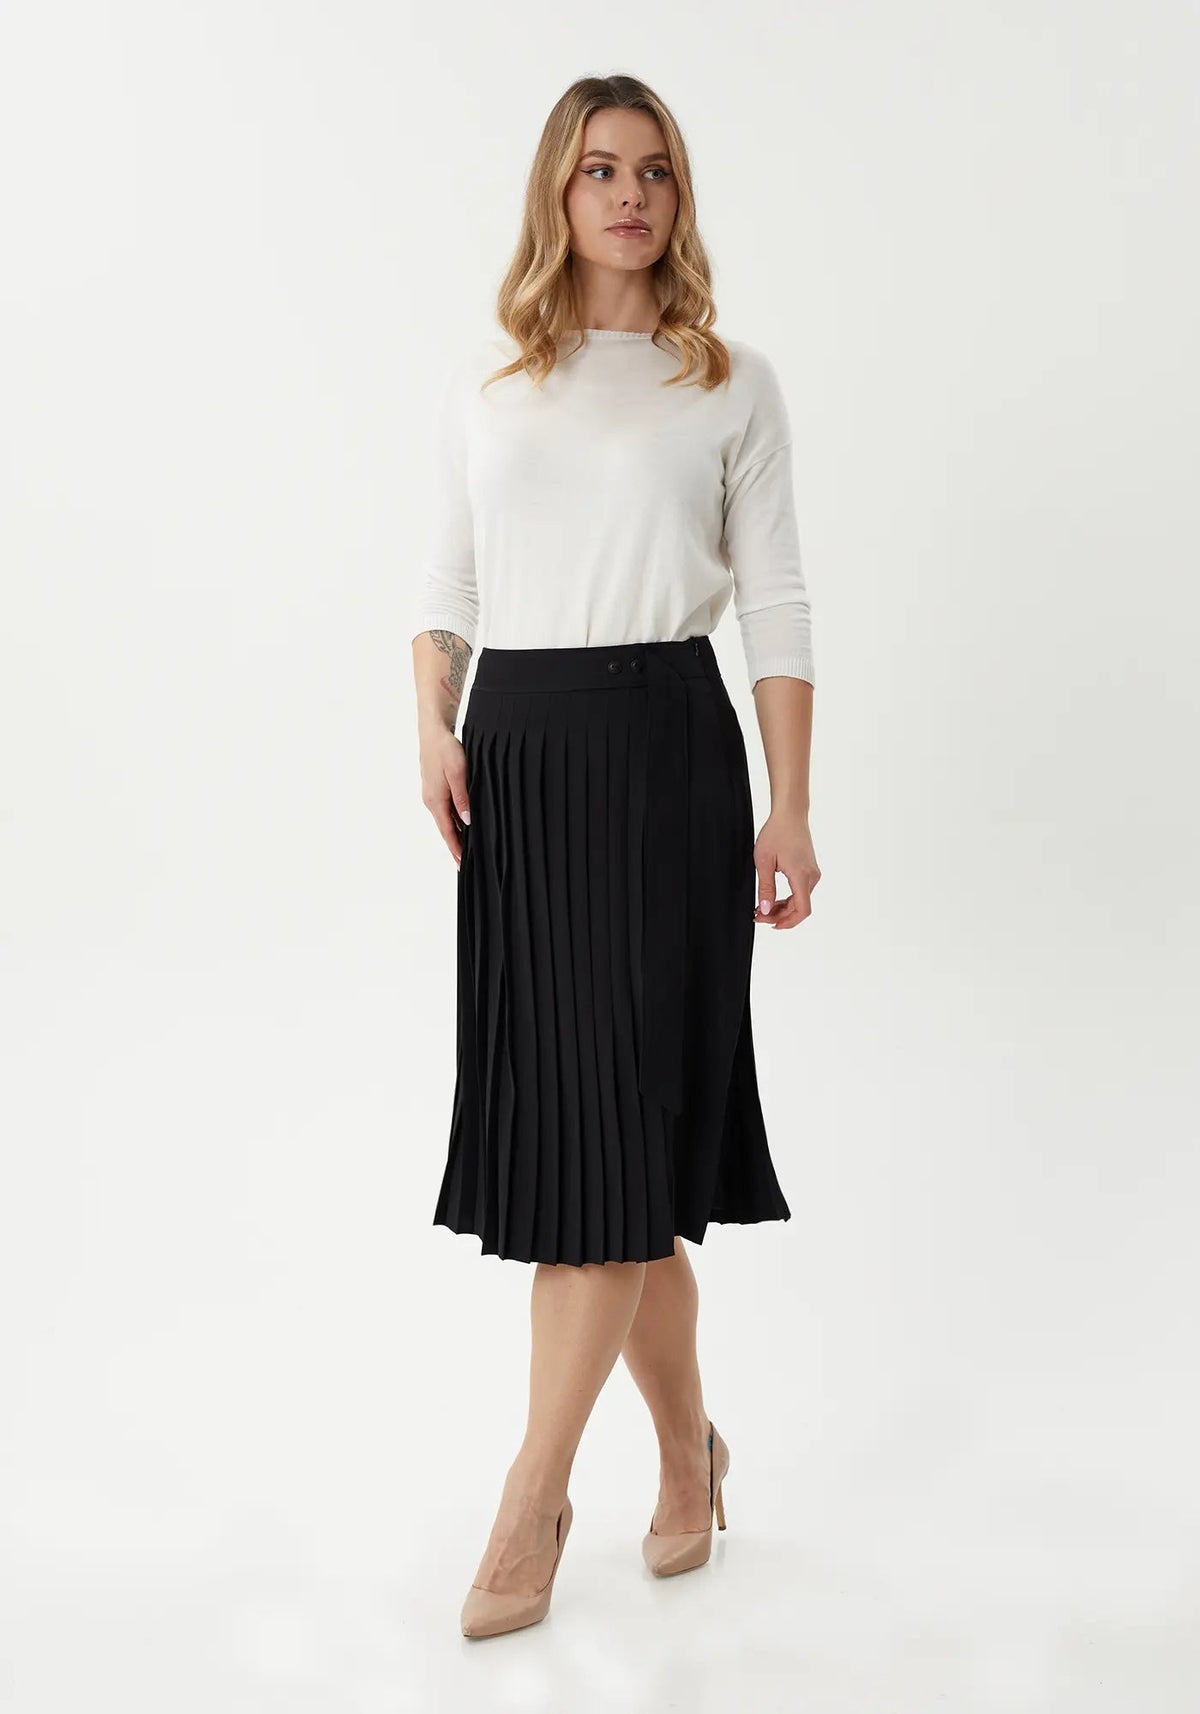 Flared Pleated Modern Elegant Below The Knee Skirt for Women - G - Line